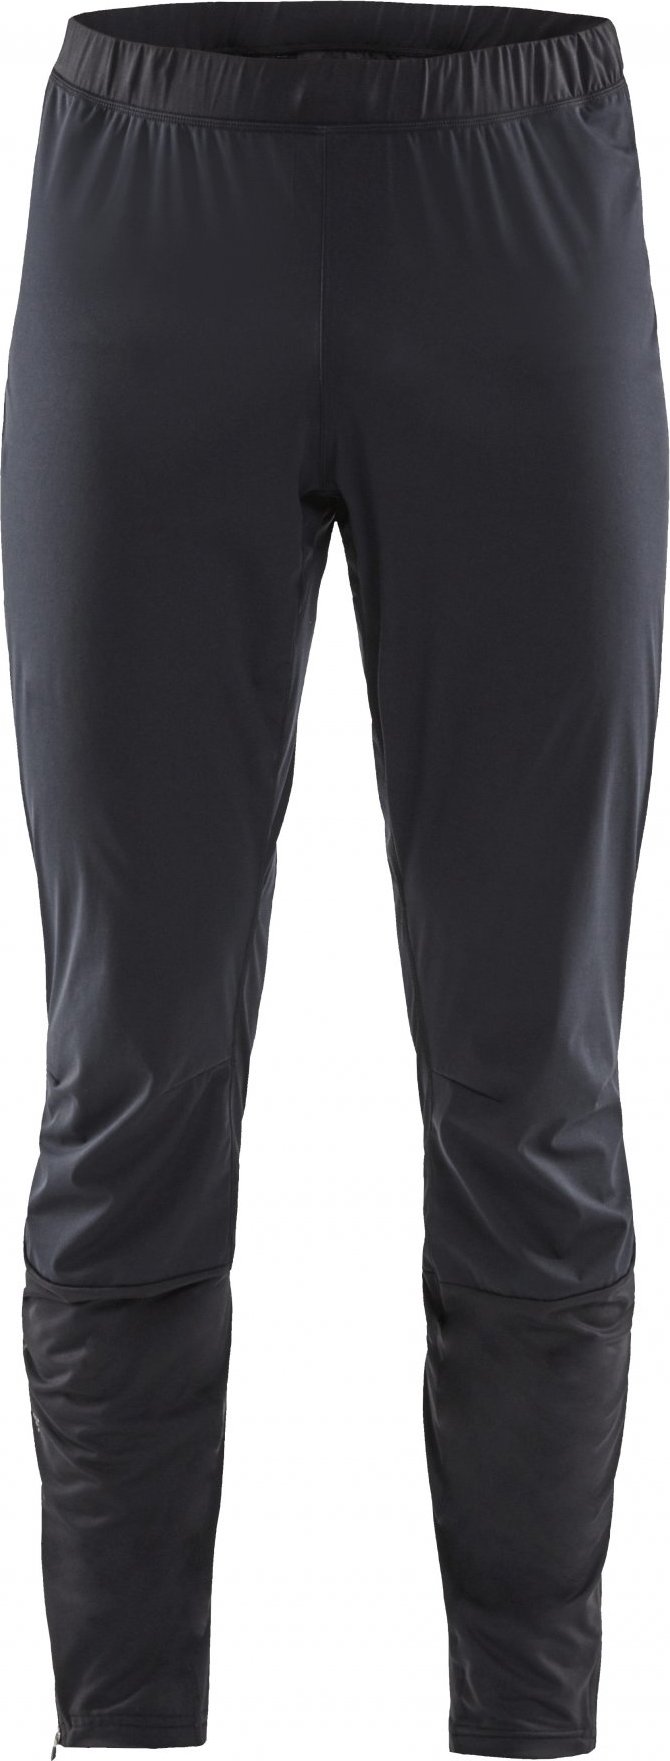 Pánské technické kalhoty CRAFT Hydro černé Velikost: XS